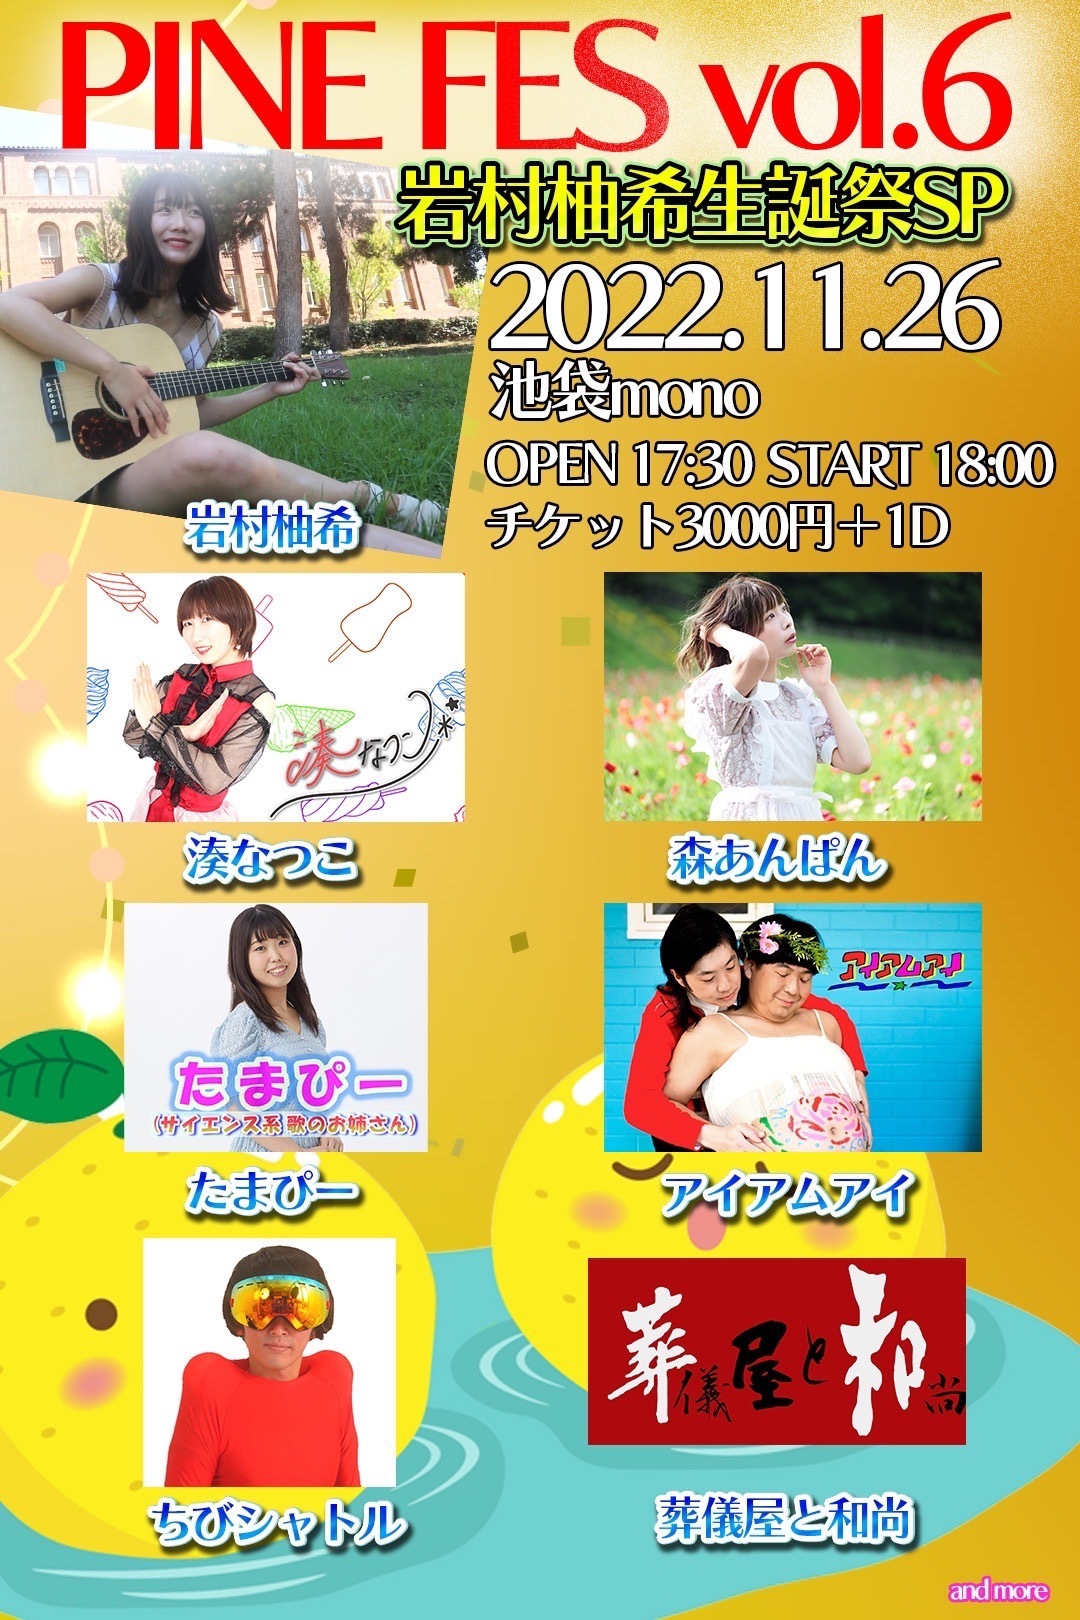 パインフェス Vol.6「岩村柚希生誕祭SP」を
池袋 LiveHouse monoにて11月26日(土)に開催